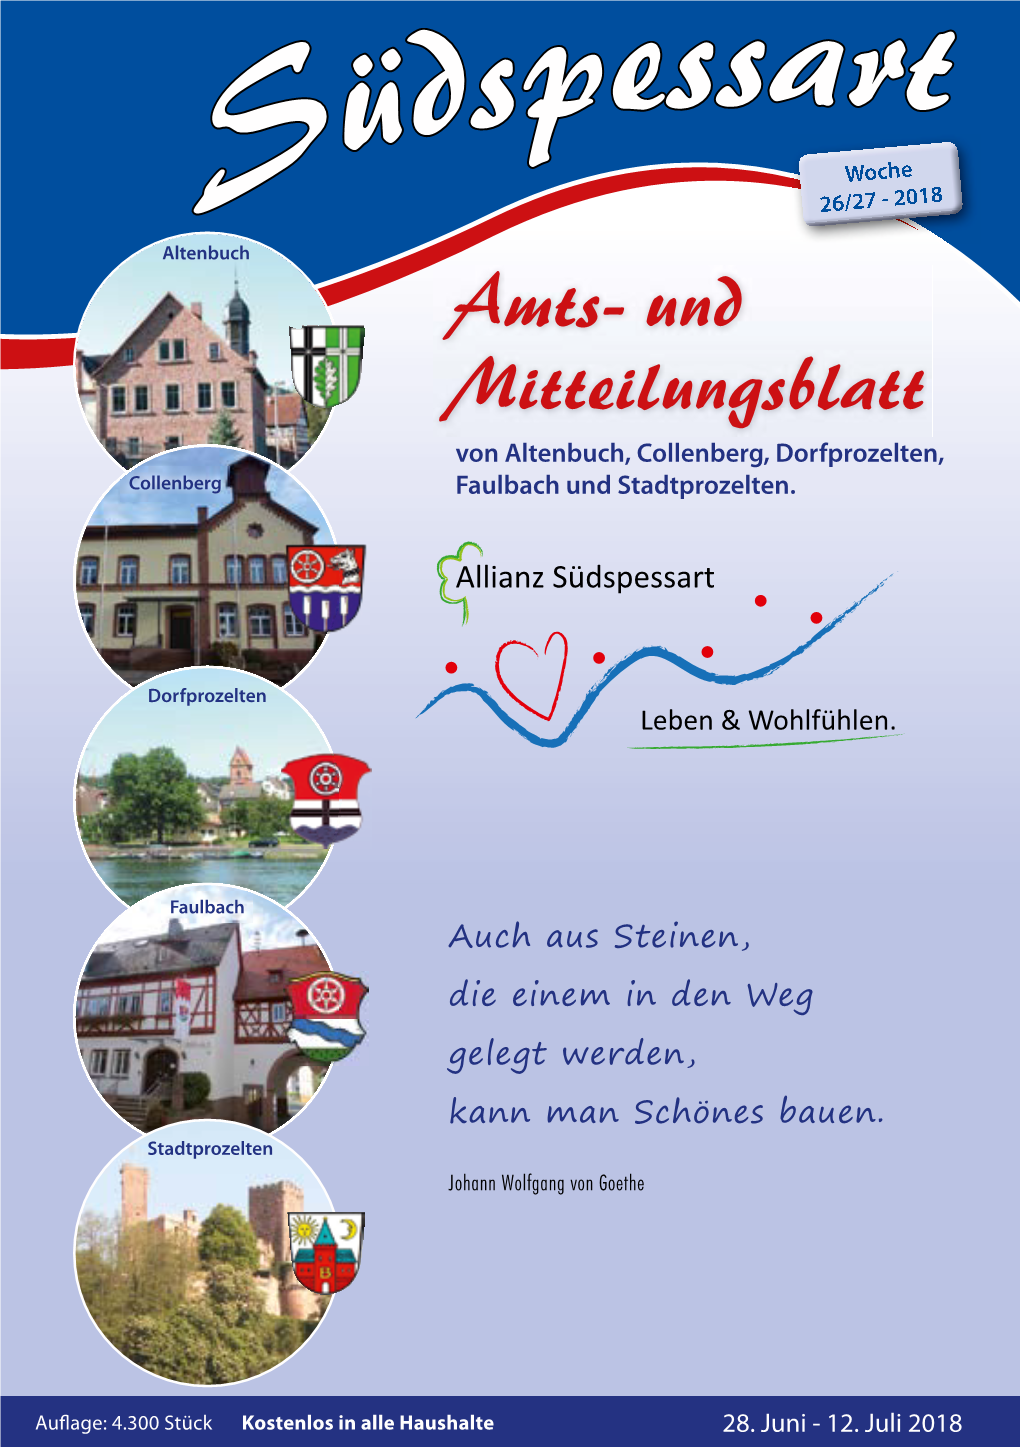 Woche S 26/27 - 2018 Altenbuch Amts- Und Mitteilungsblatt Von Altenbuch, Collenberg, Dorfprozelten, Collenberg Faulbach Und Stadtprozelten